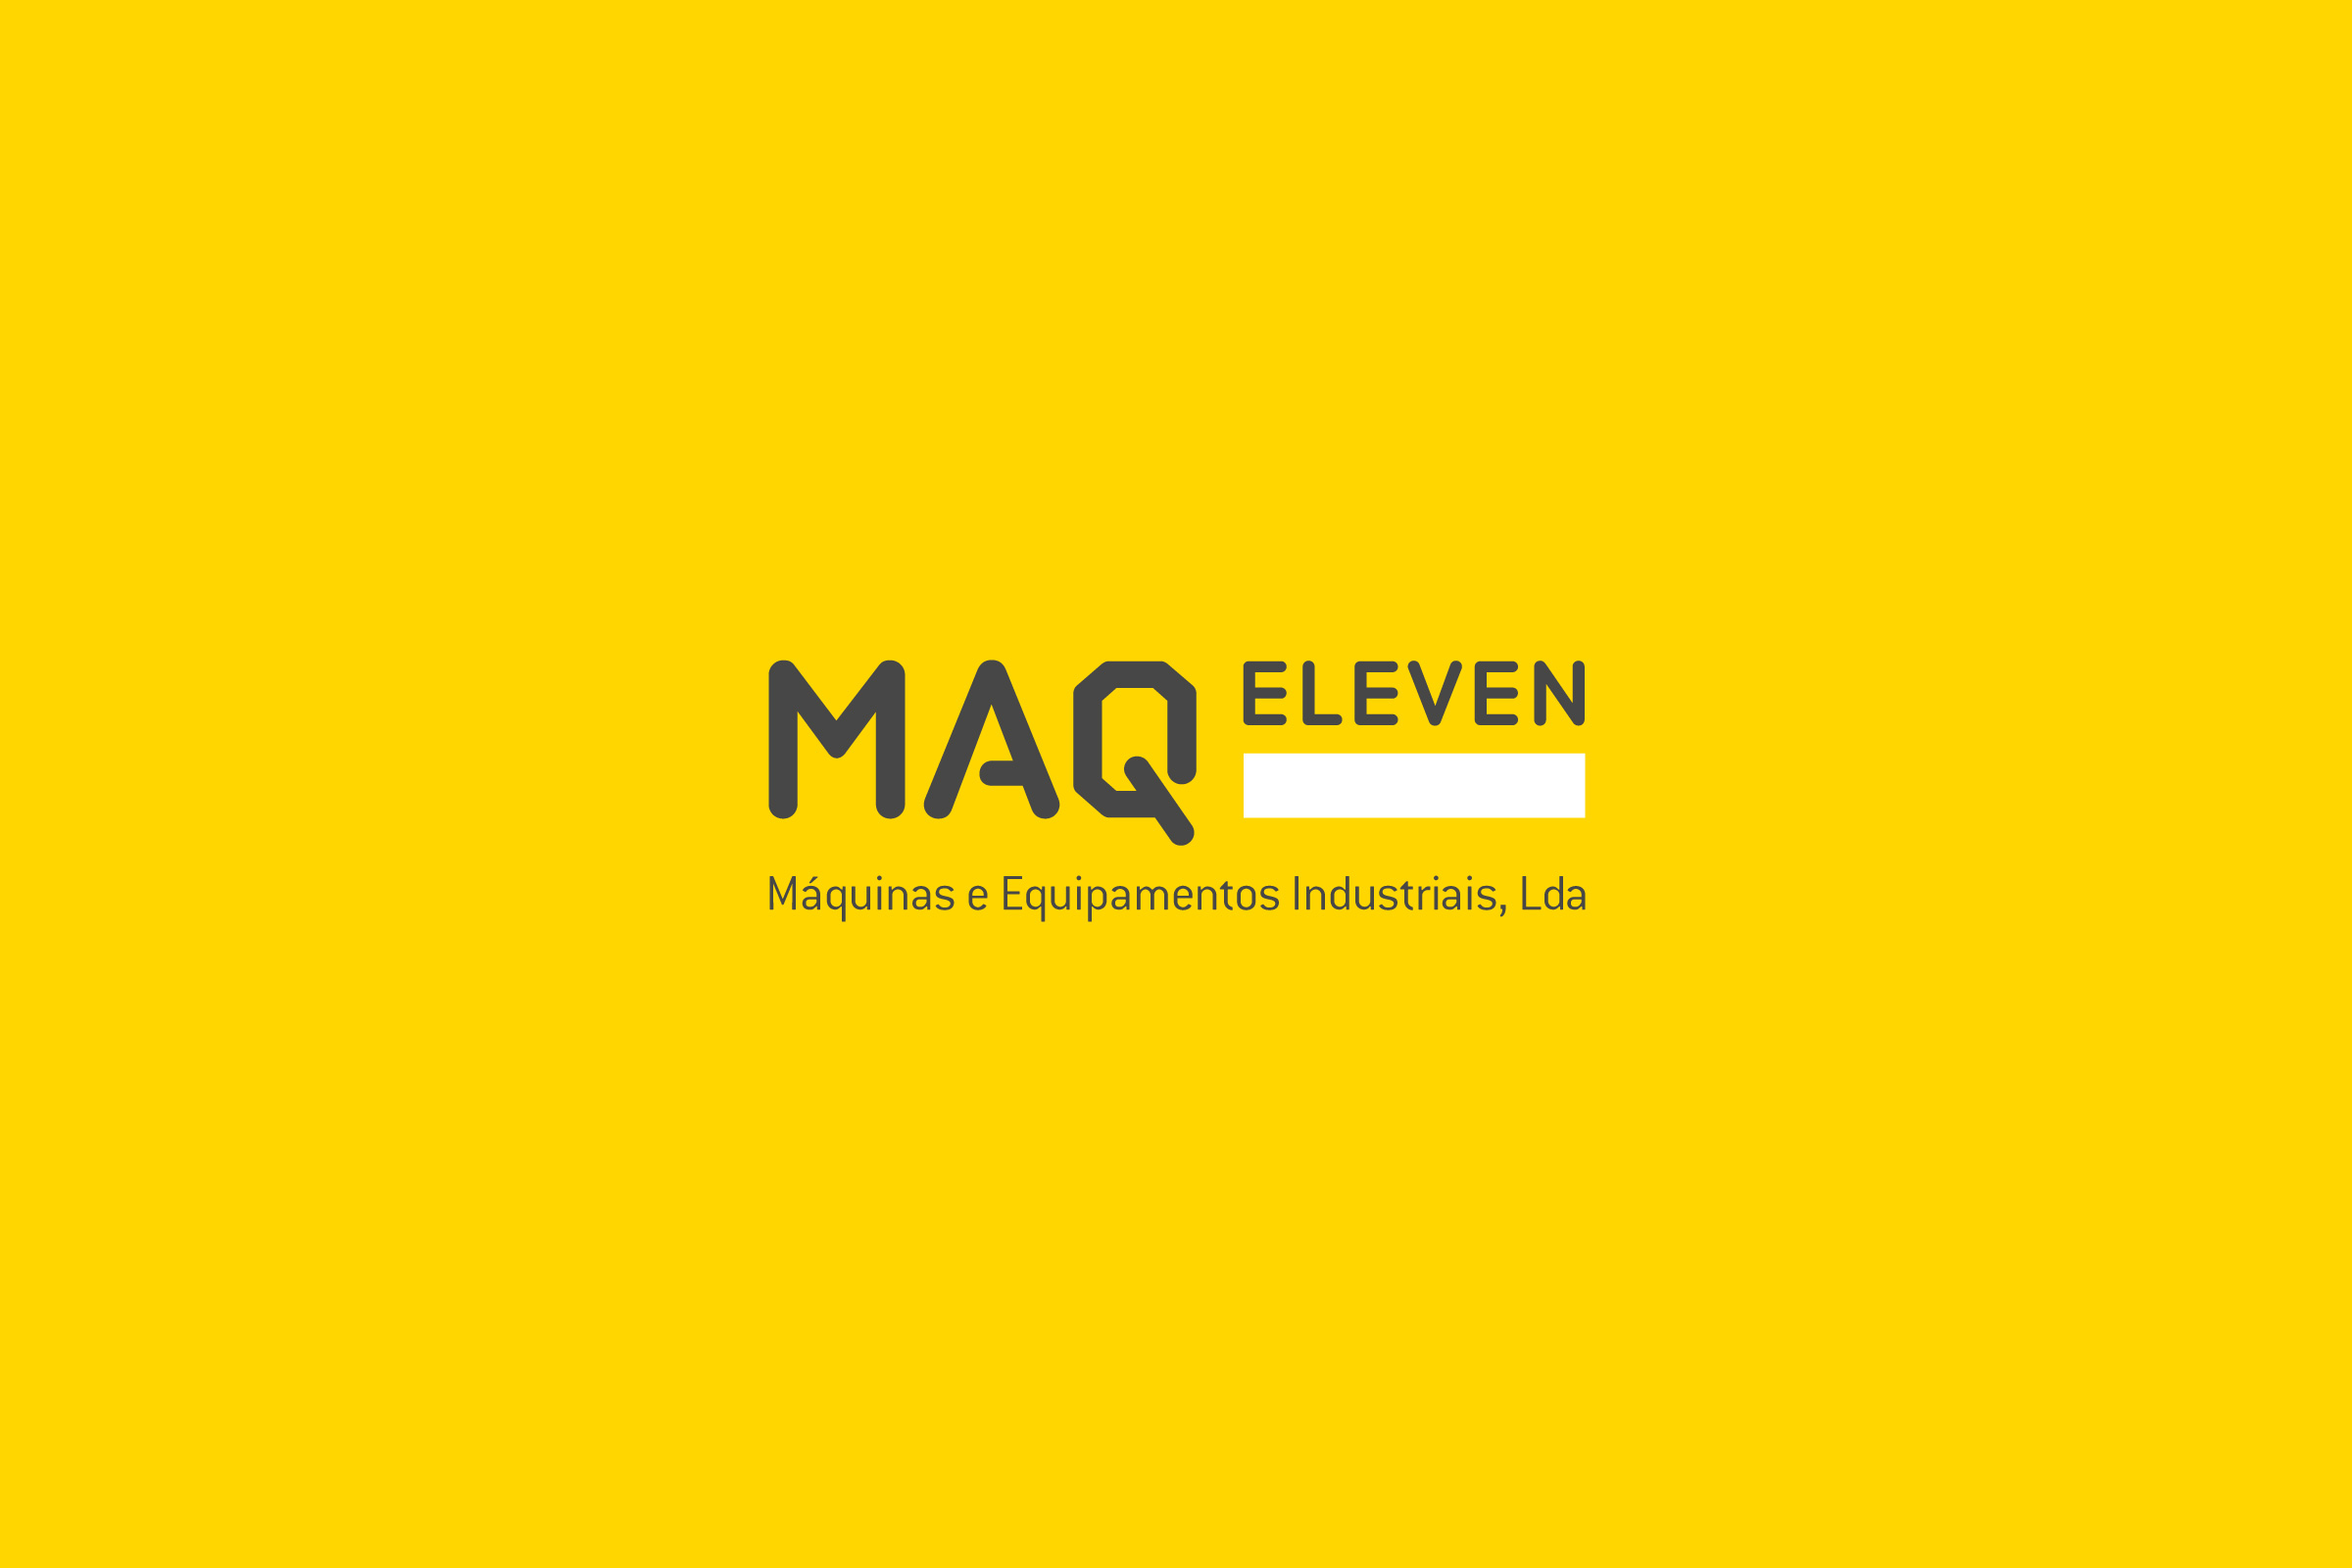 MAQ Eleven